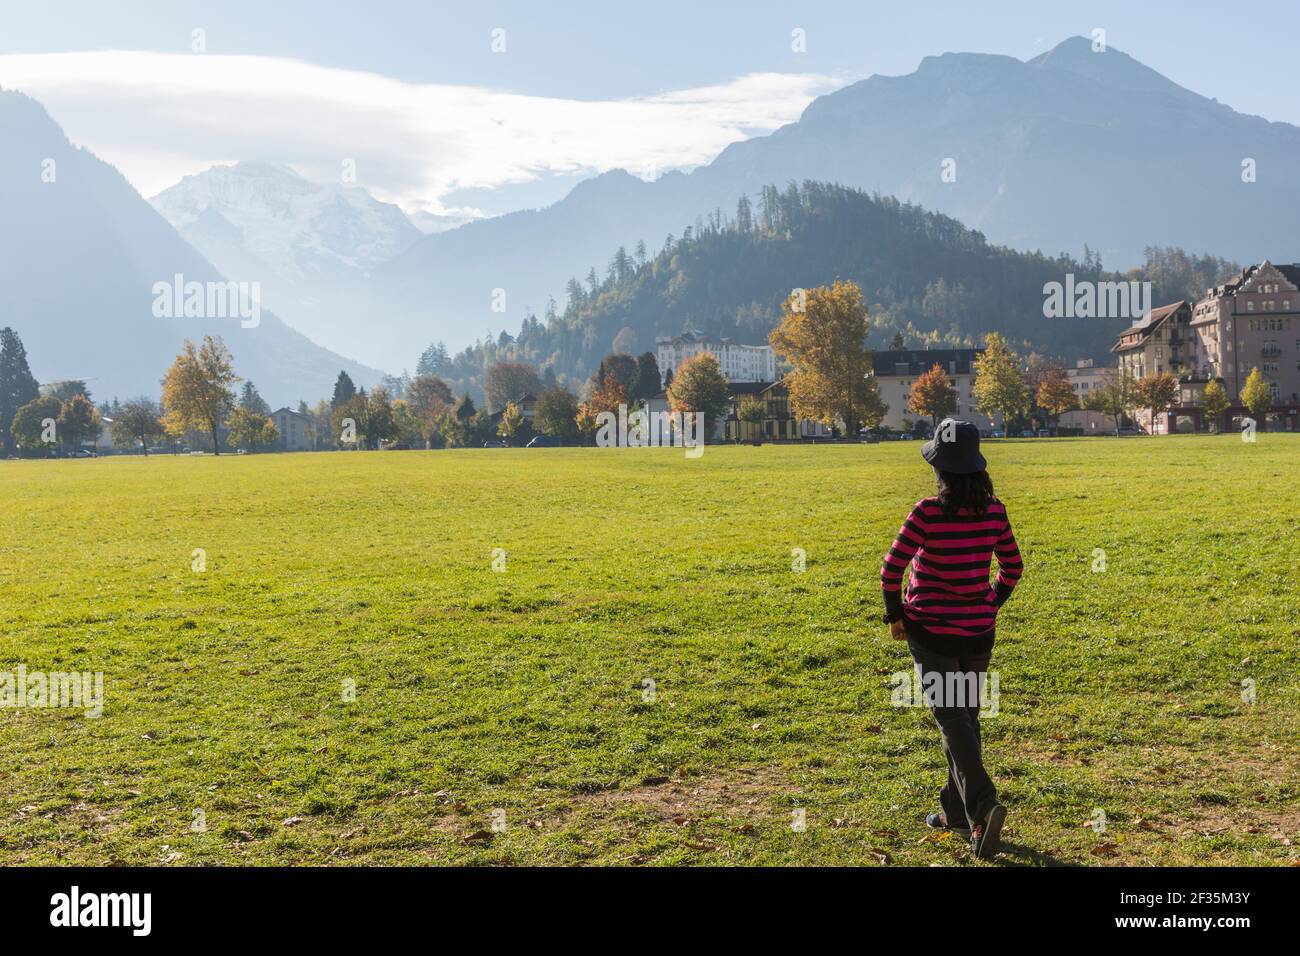 Suisse, Interlaken, femme regardant vers les Alpes suisses à travers un pré vert. Banque D'Images